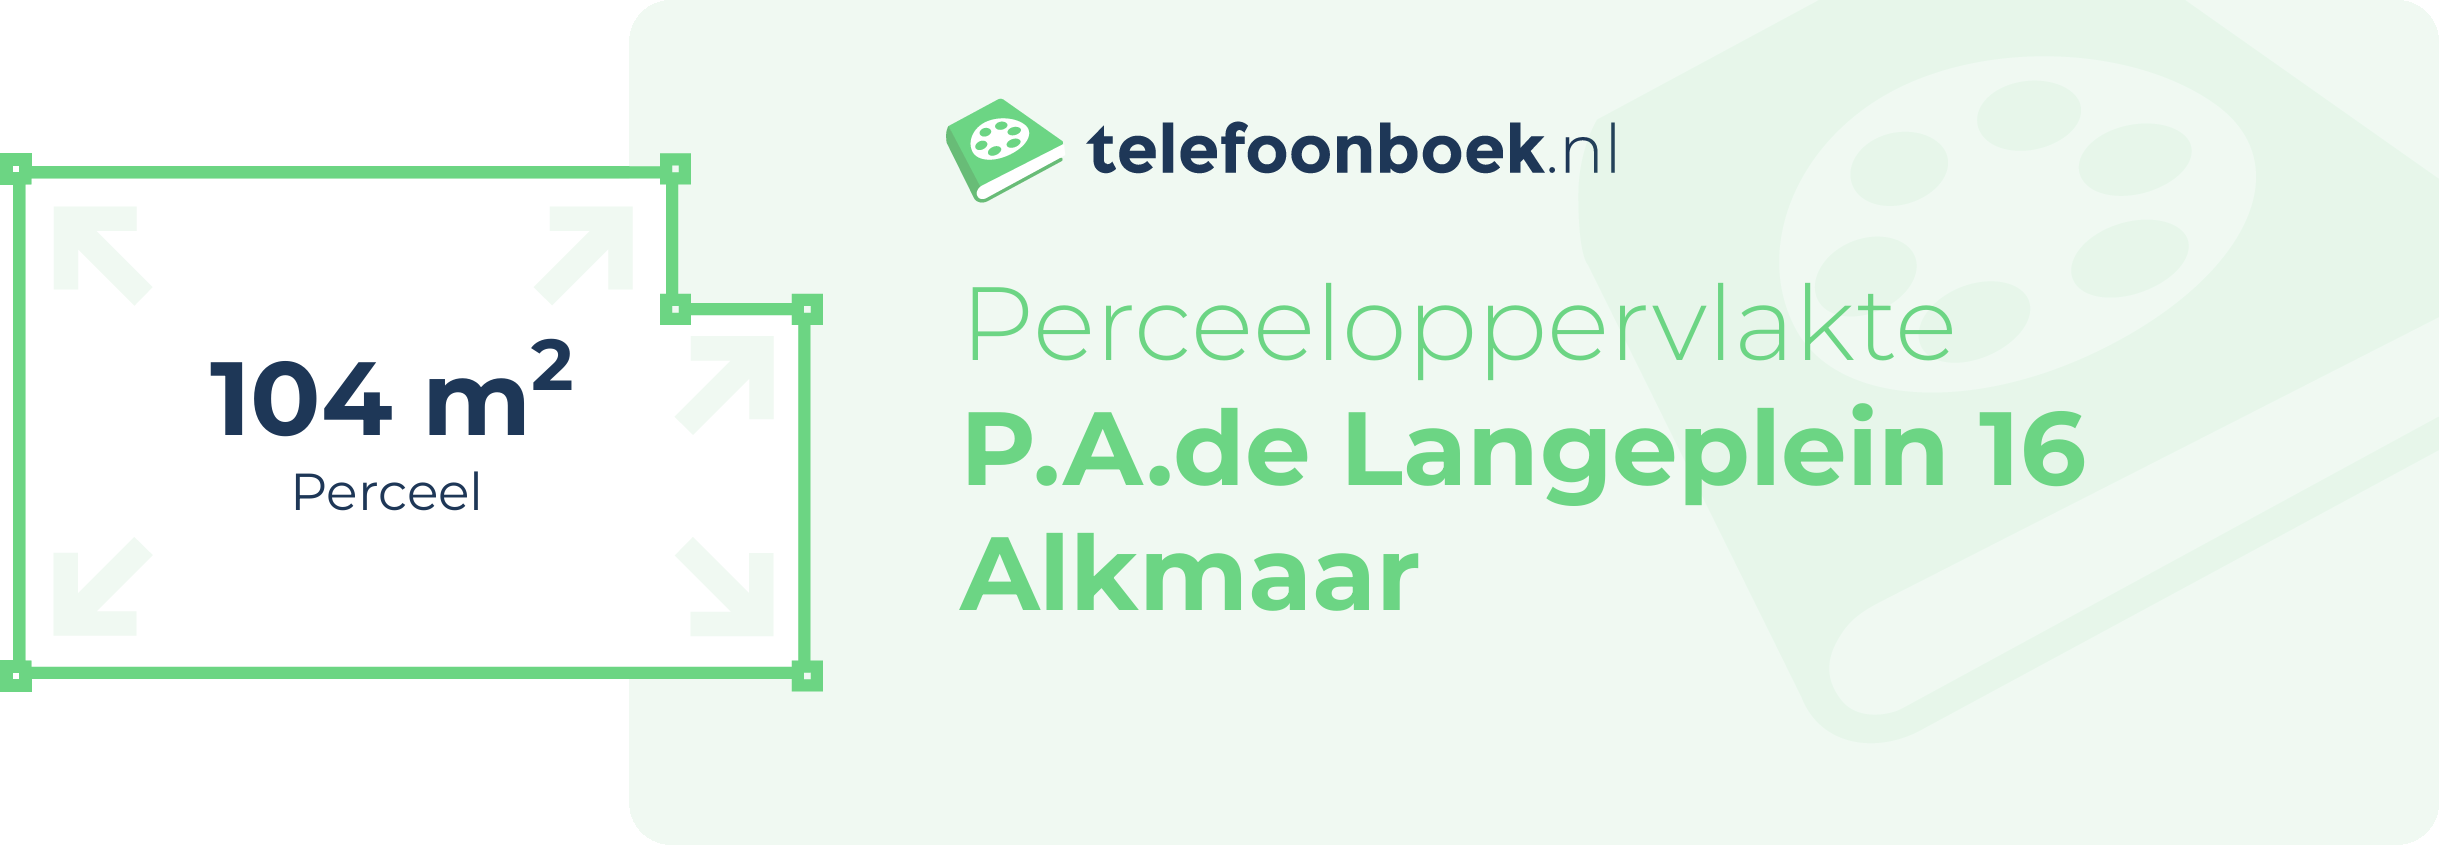 Perceeloppervlakte P.A.de Langeplein 16 Alkmaar